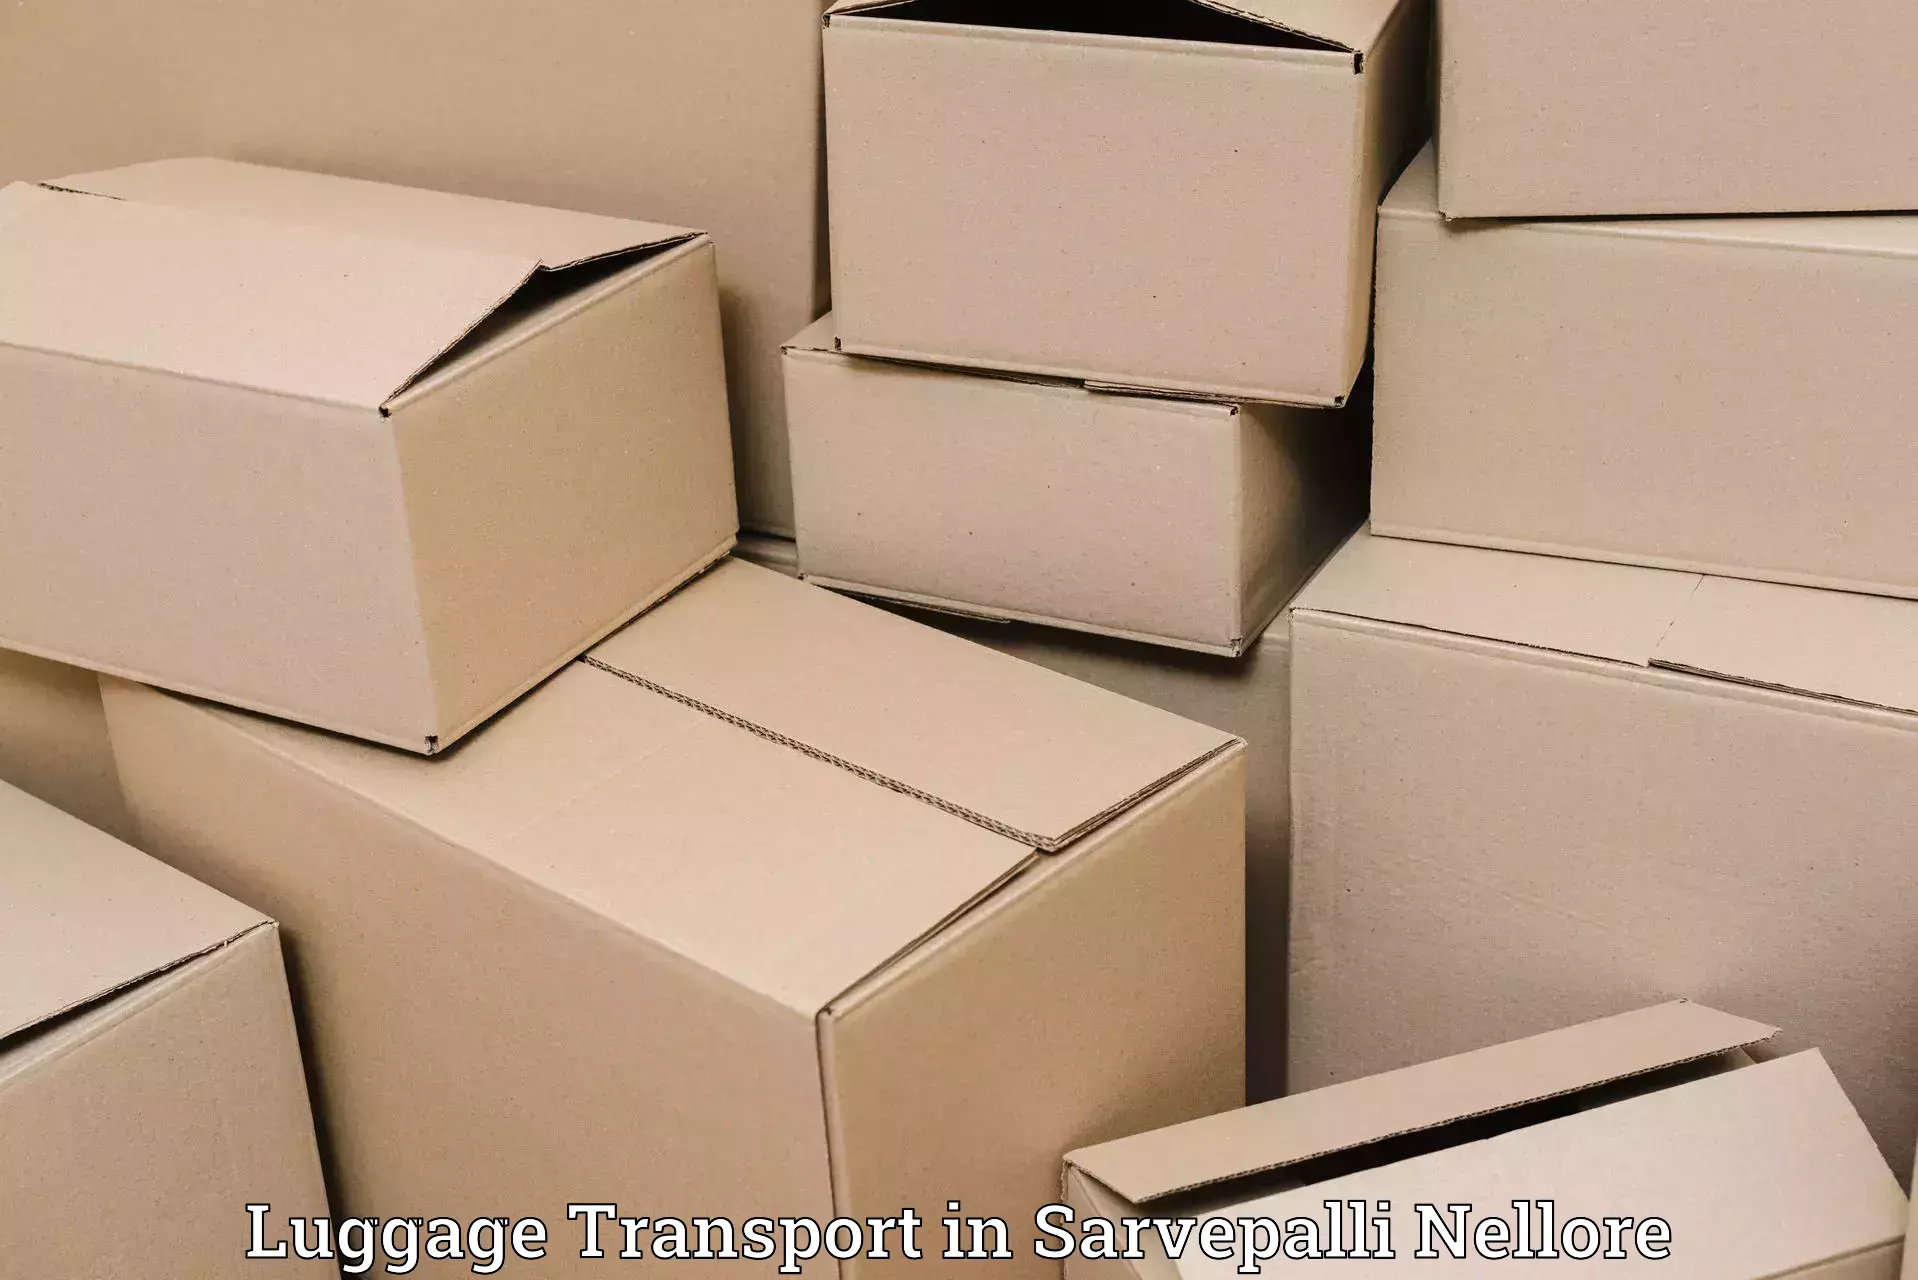 Premium luggage delivery in Sarvepalli Nellore